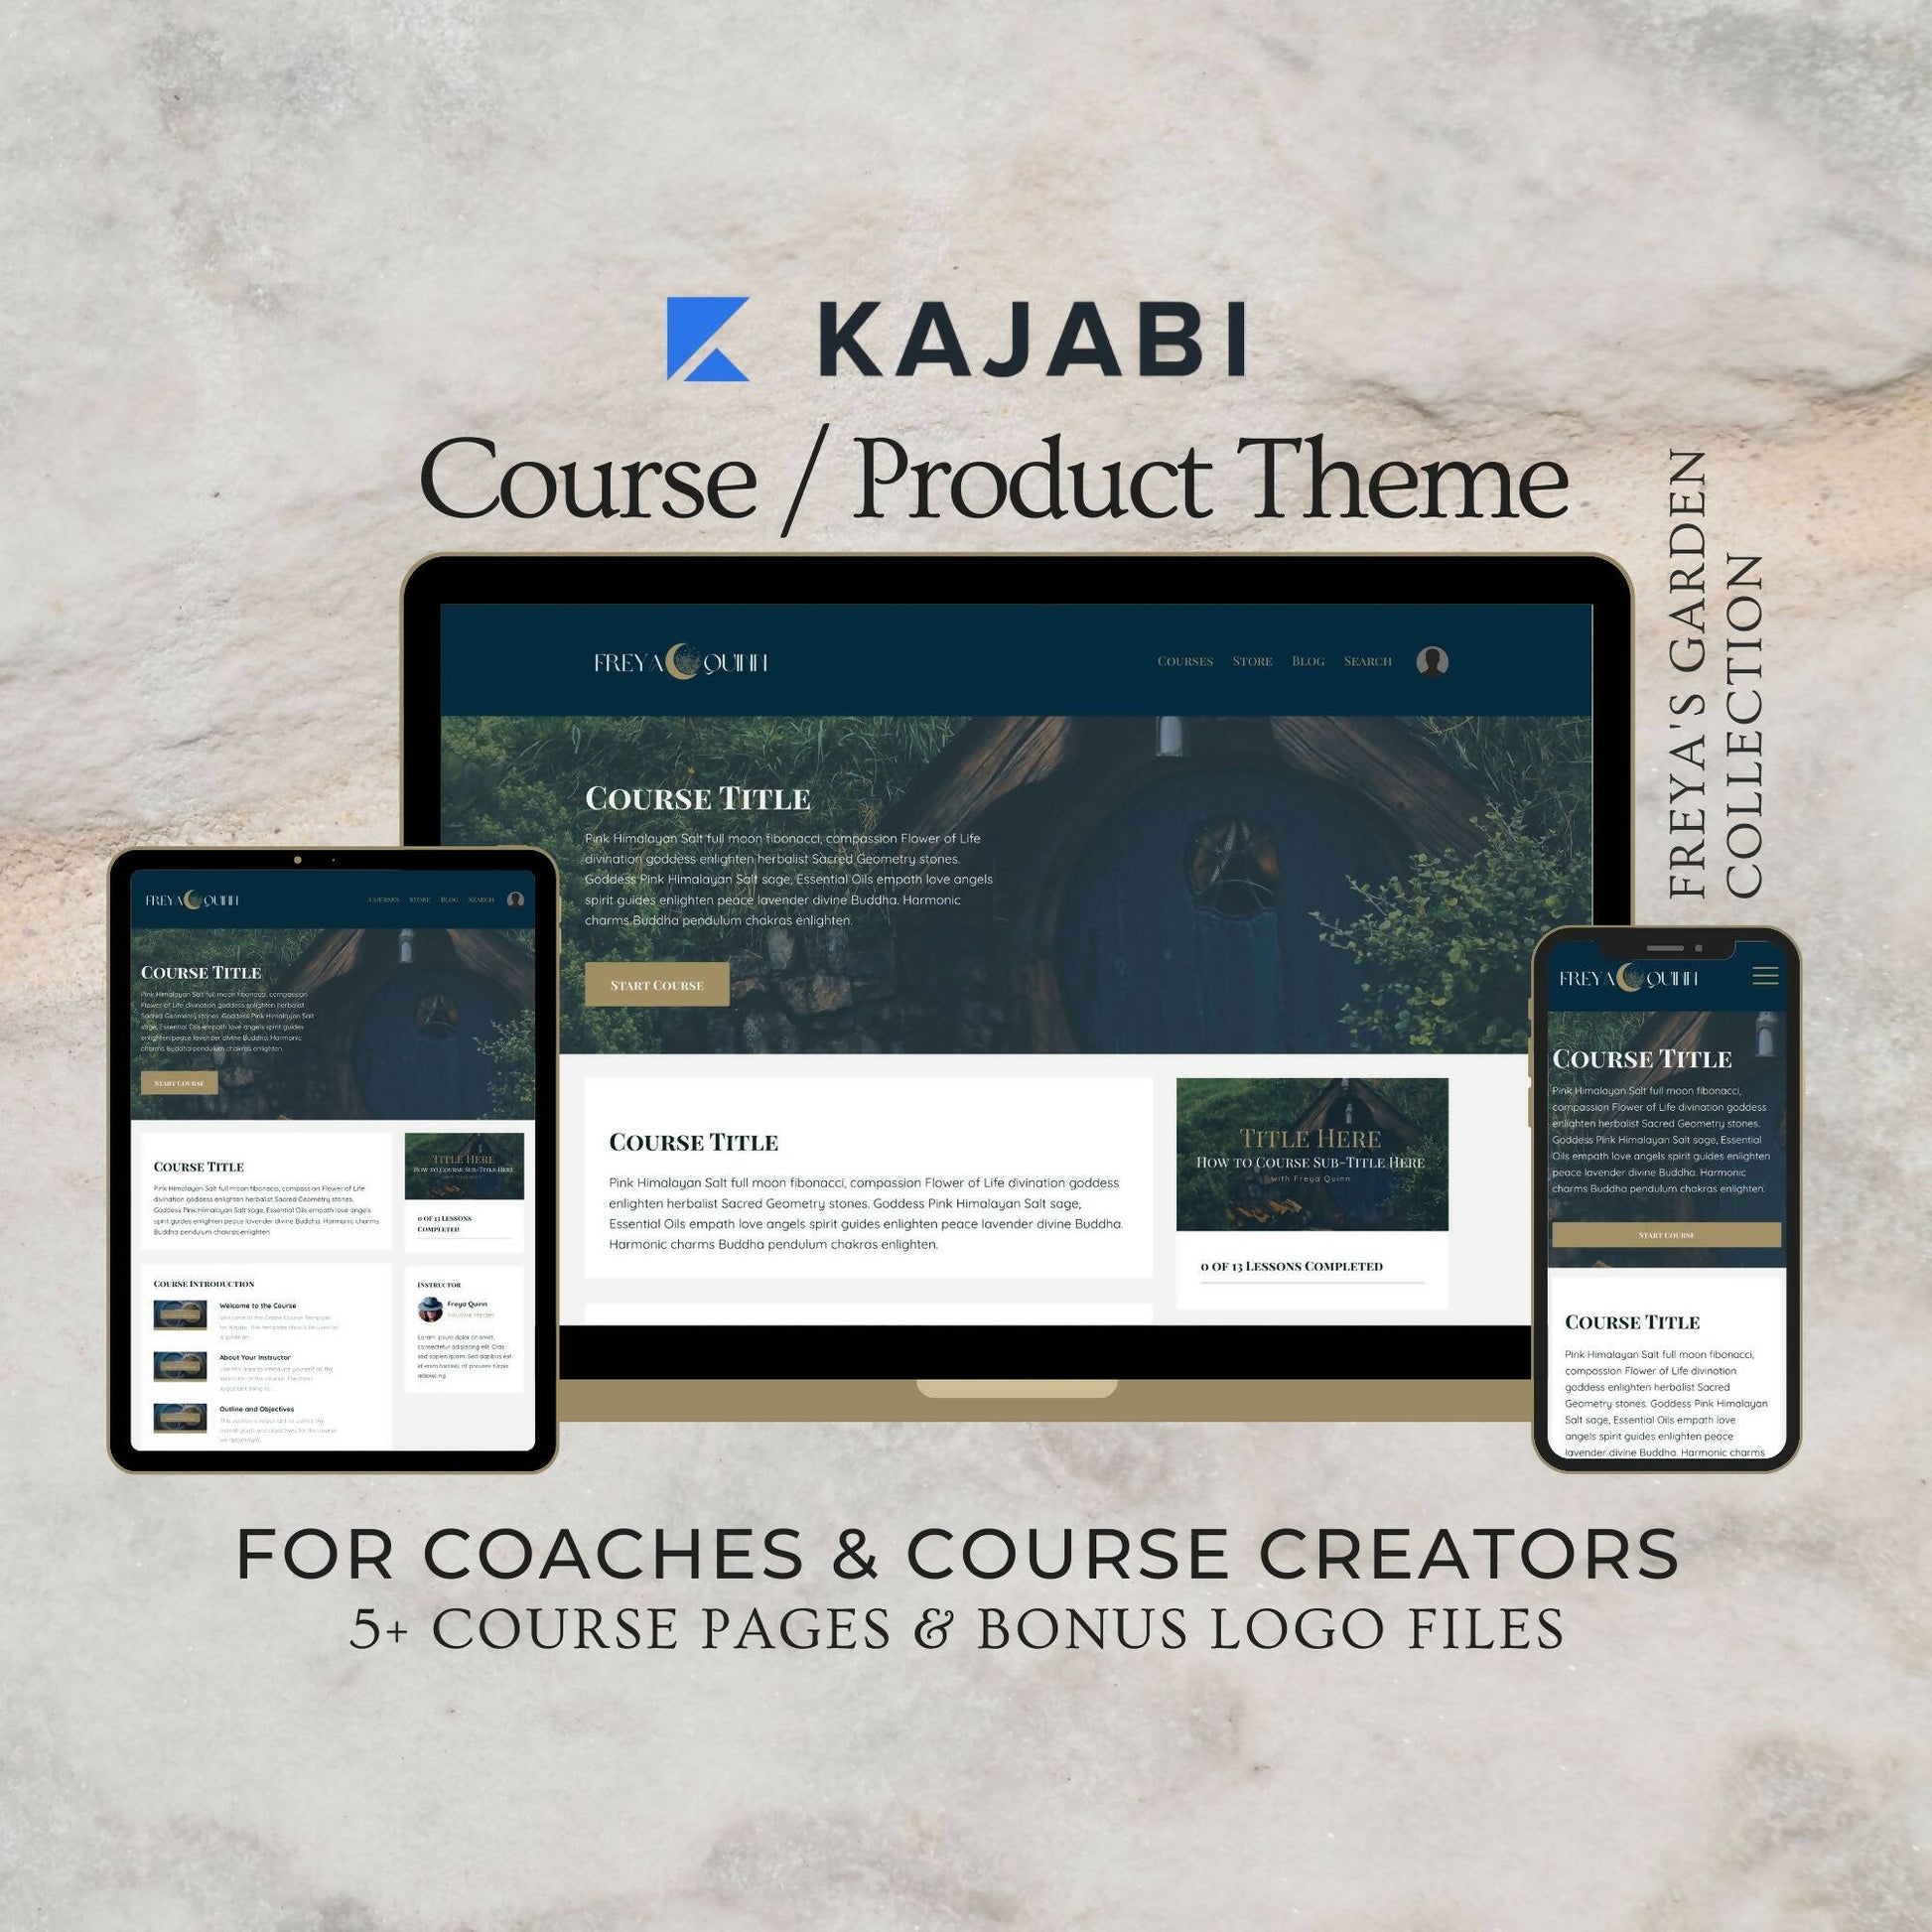 kajabi-course-theme-coach-course-creator01